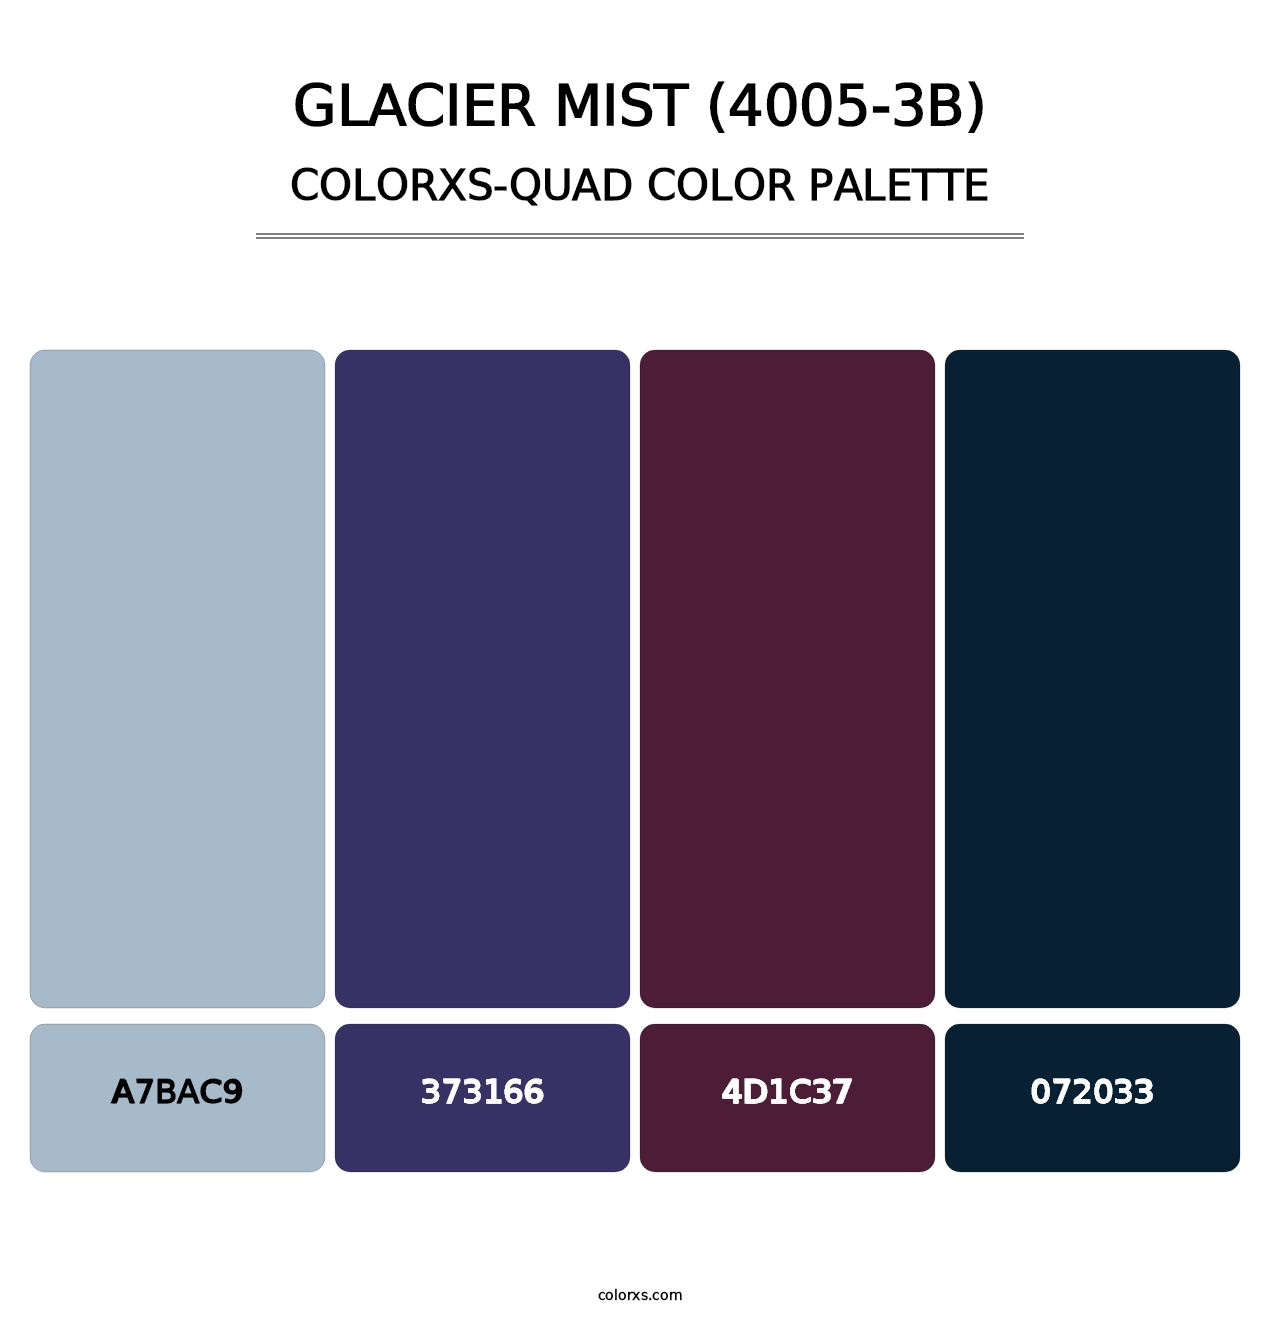 Glacier Mist (4005-3B) - Colorxs Quad Palette